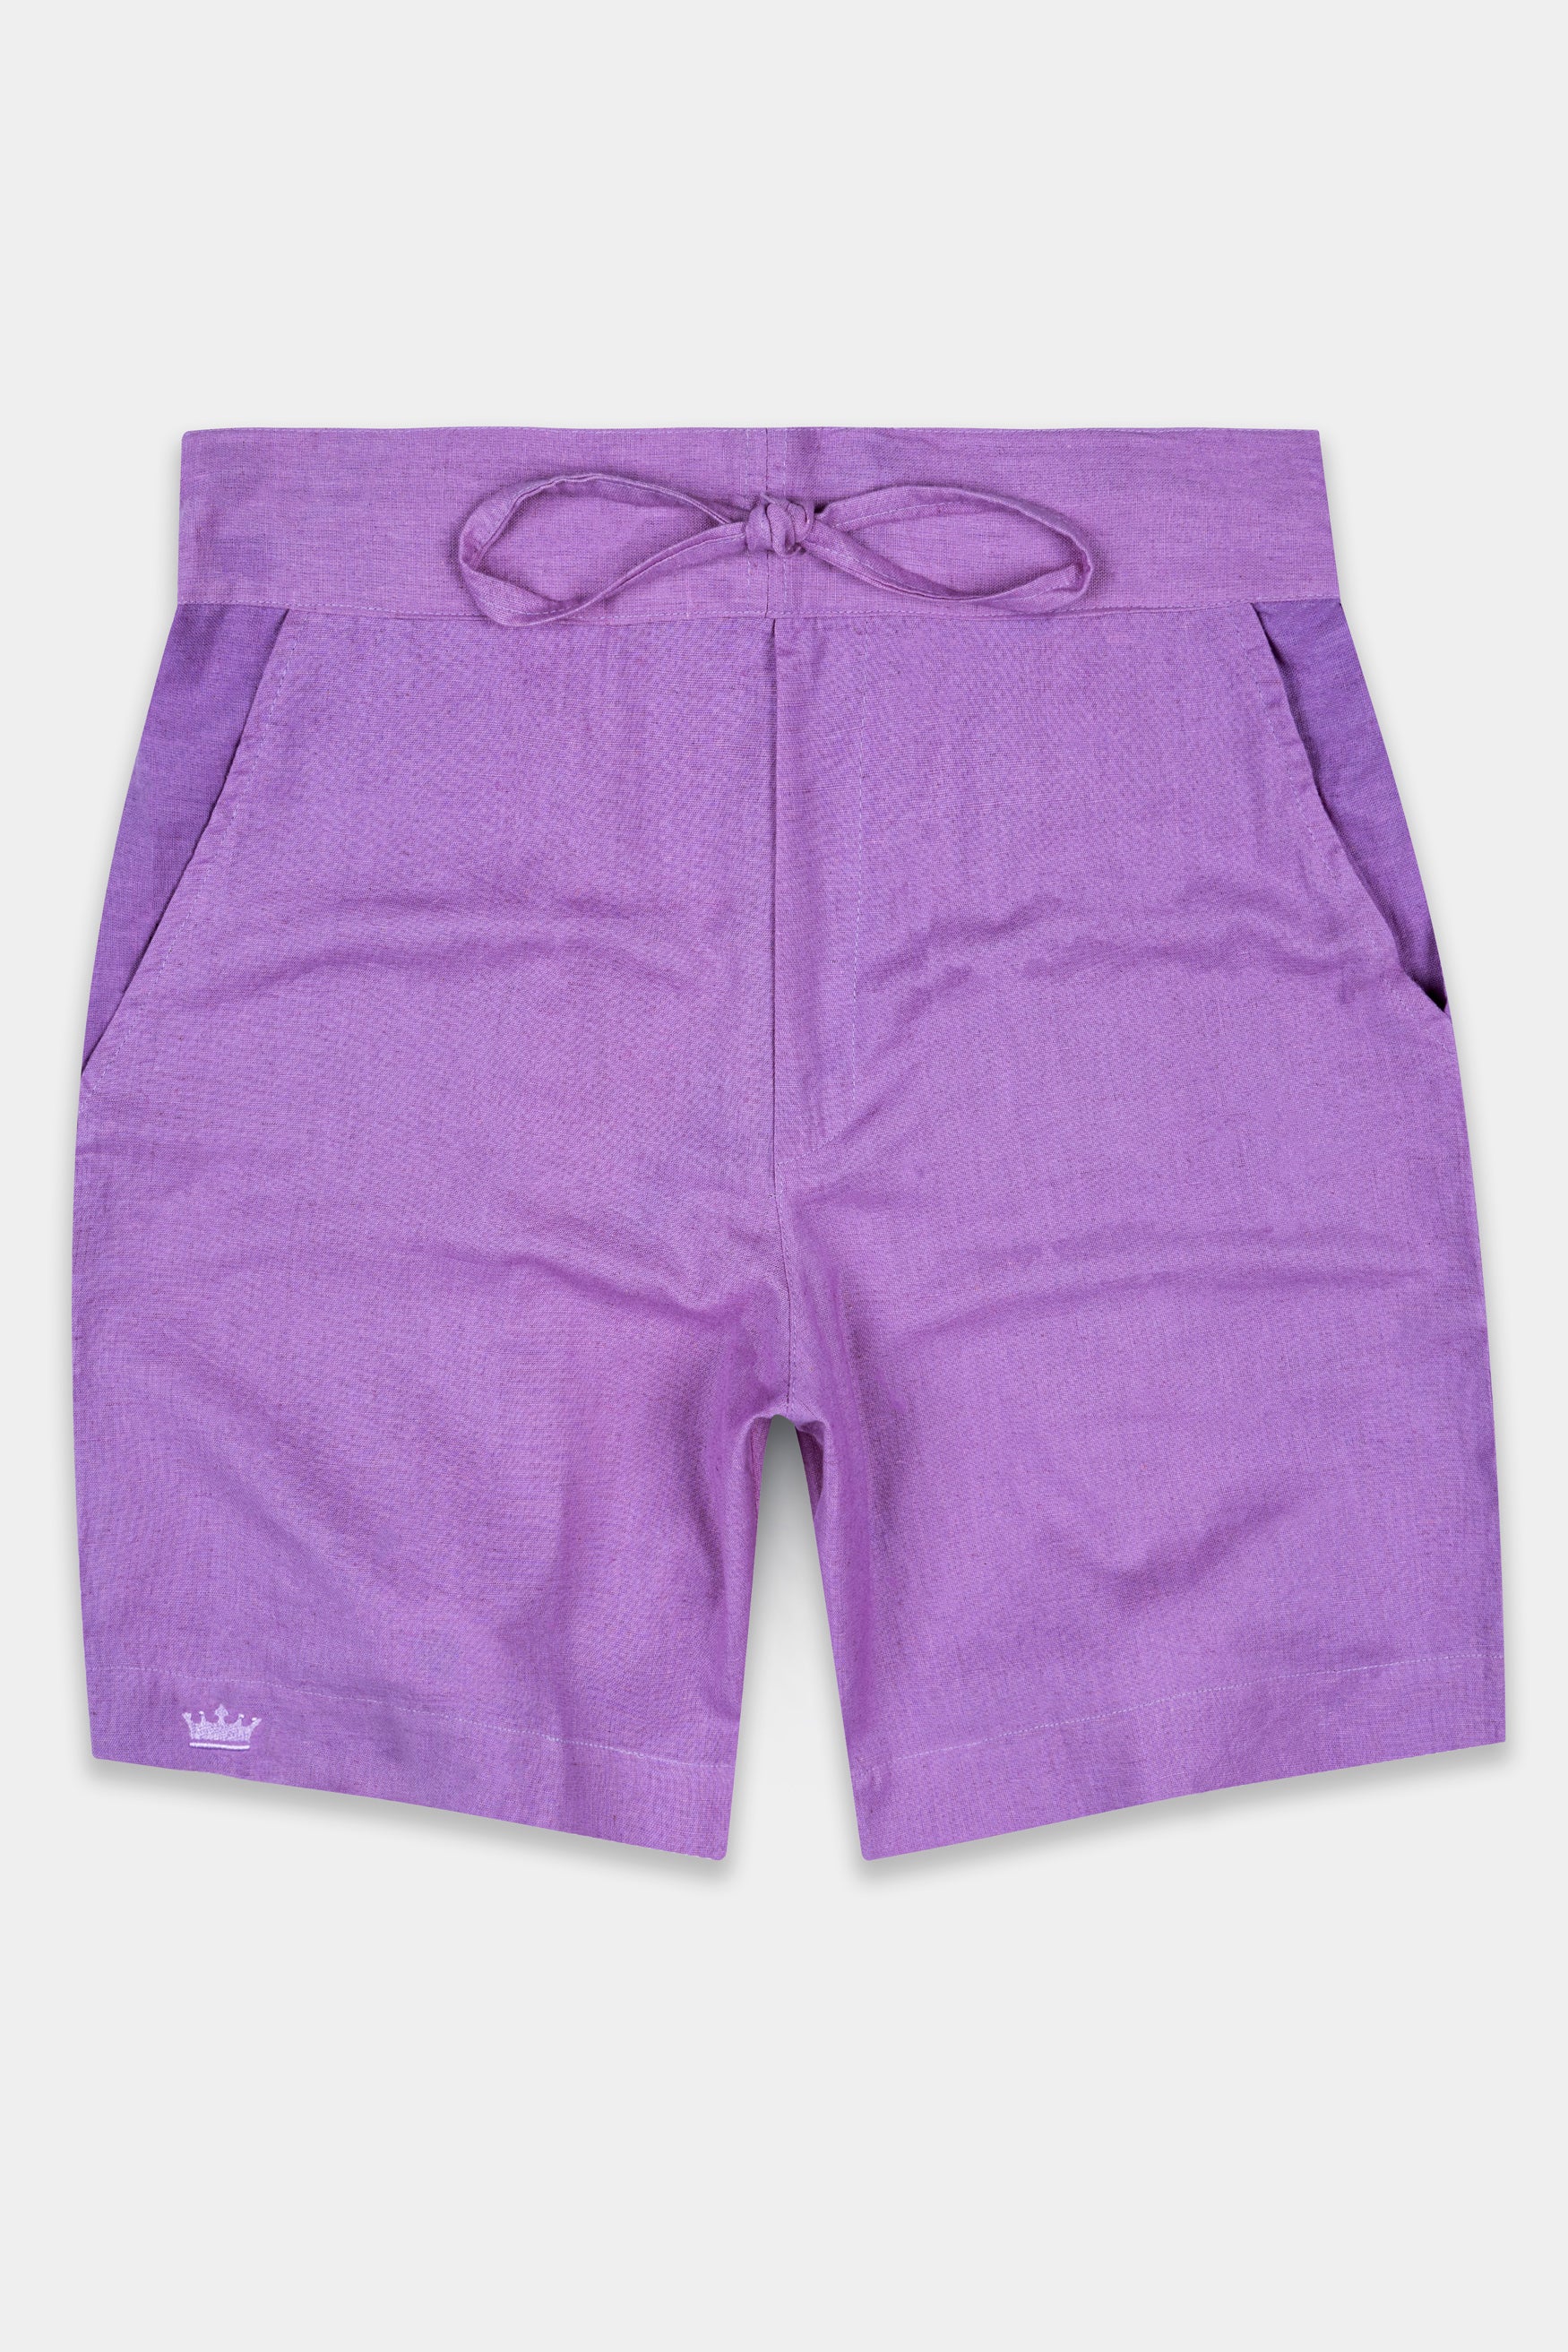 Buy Luxe Linen Shorts For Men Online In India